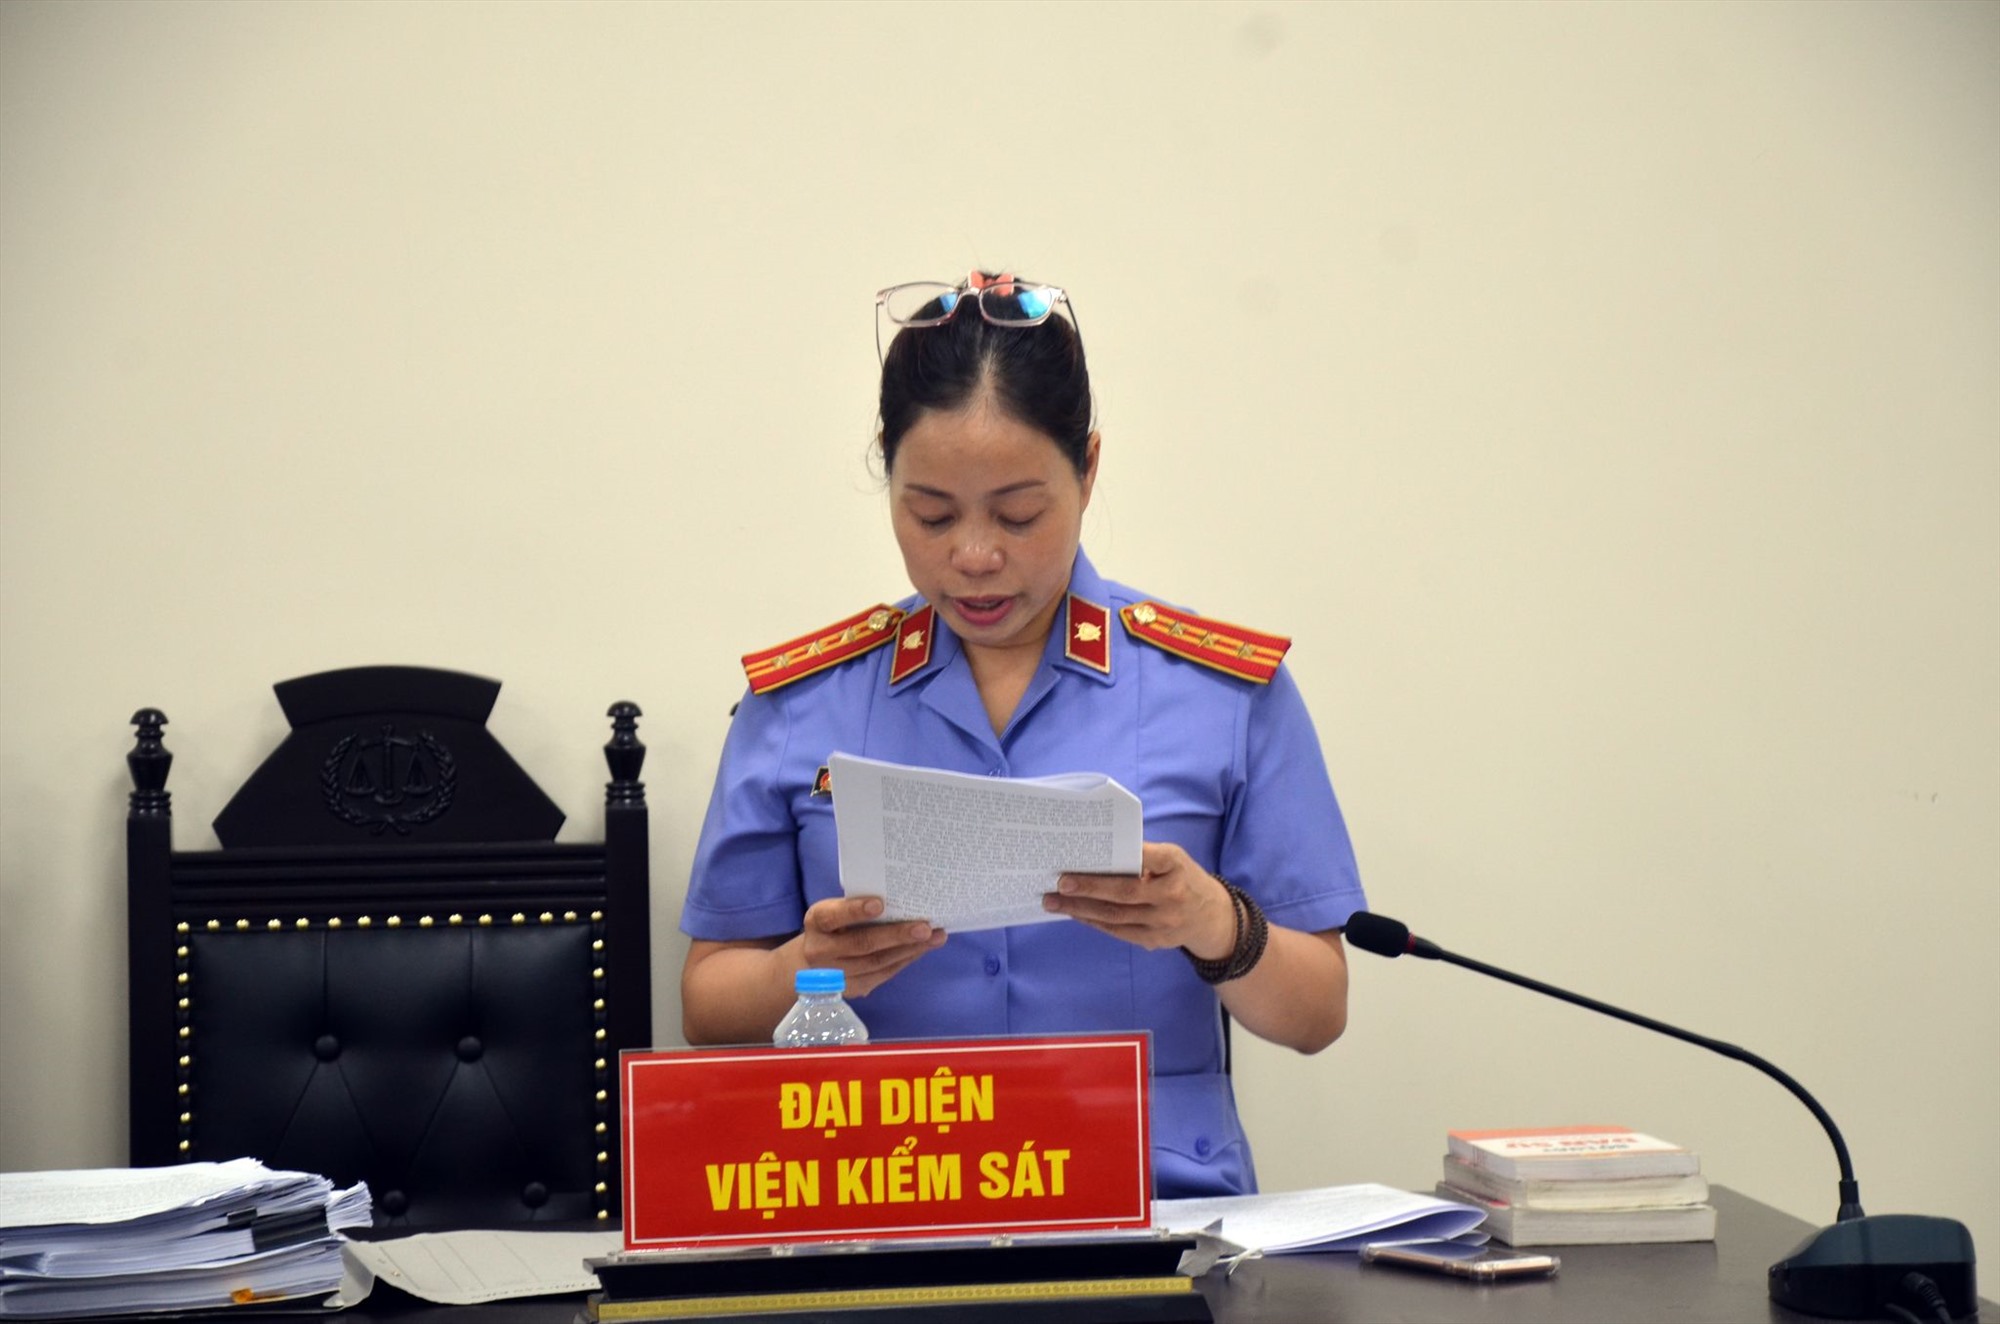 Đại diện Viện Kiểm sát công bố cáo trạng truy tố với Phạm Duy Hùng. Ảnh: Quang Việt